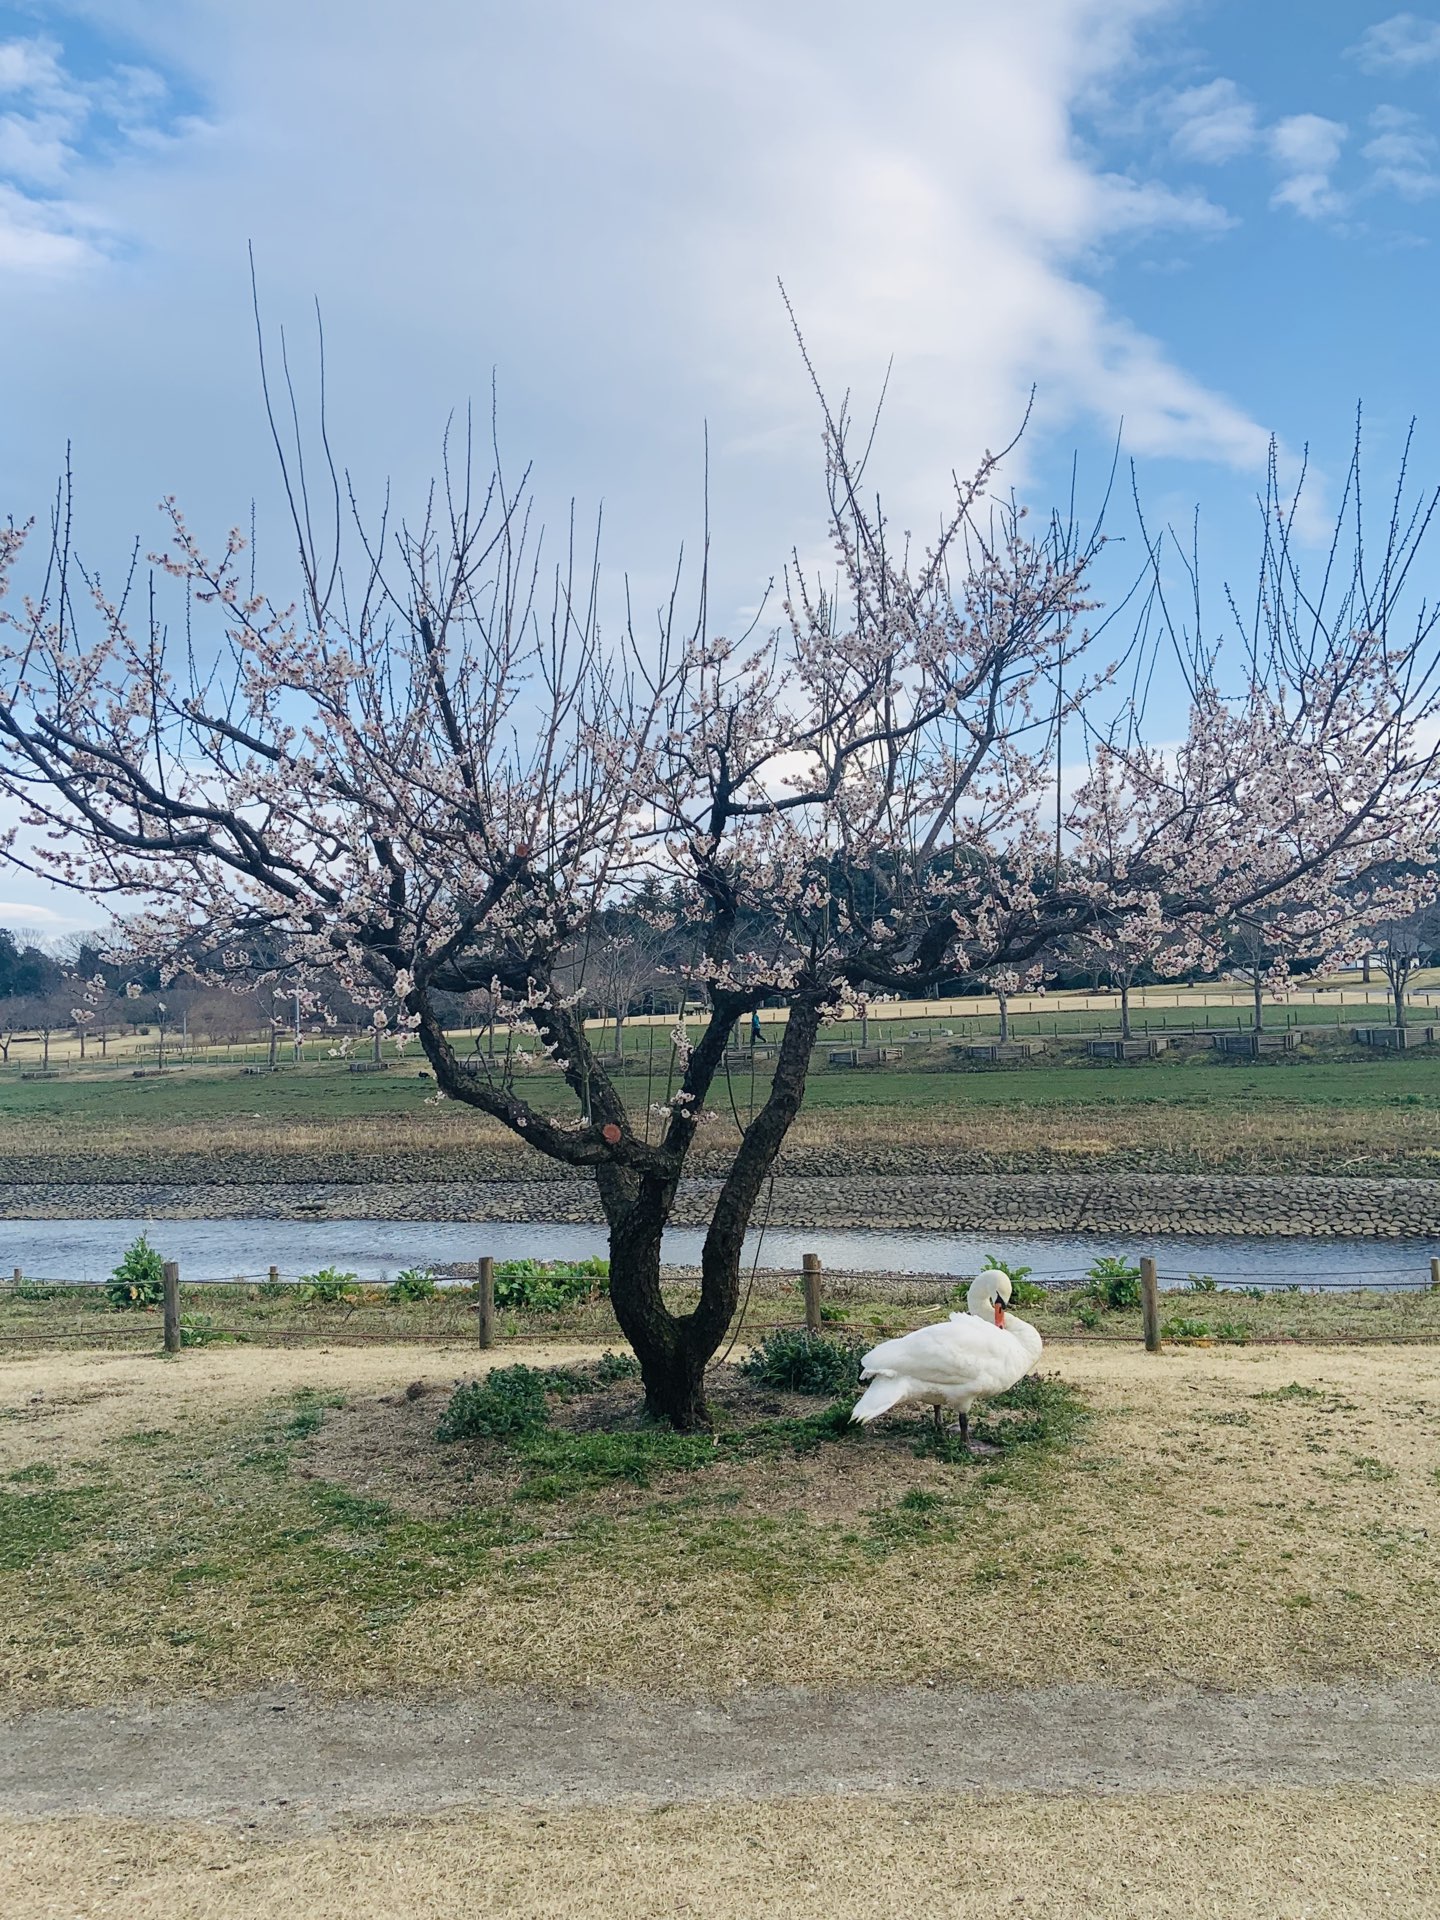 樱花在日本